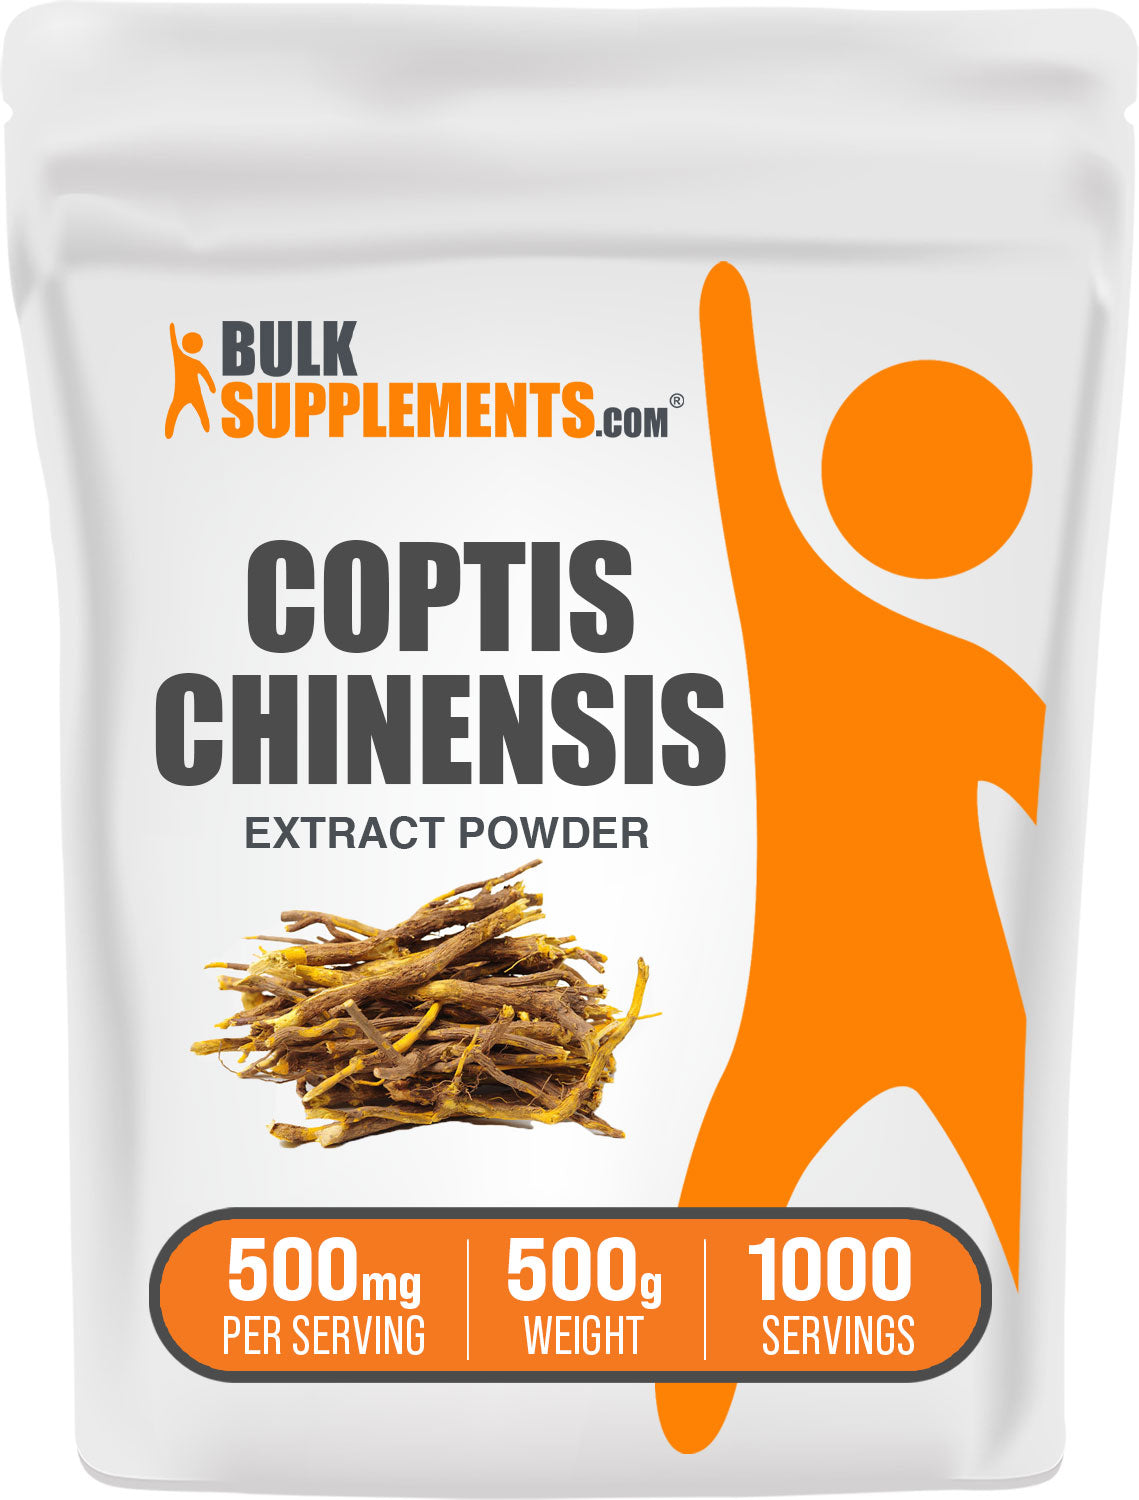 500g of coptis chinensis